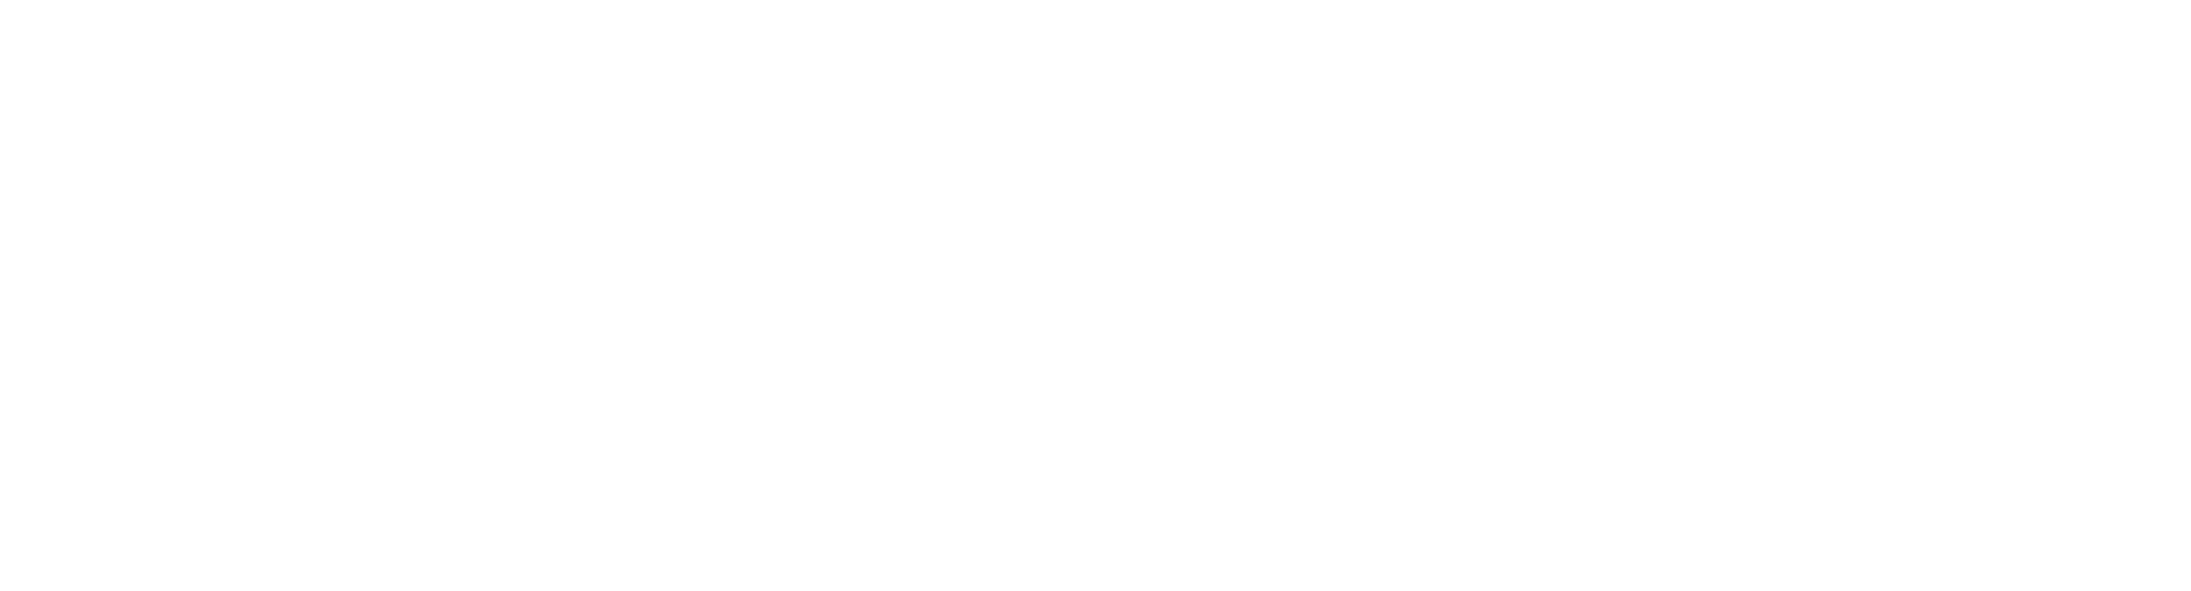 KP-logo-white